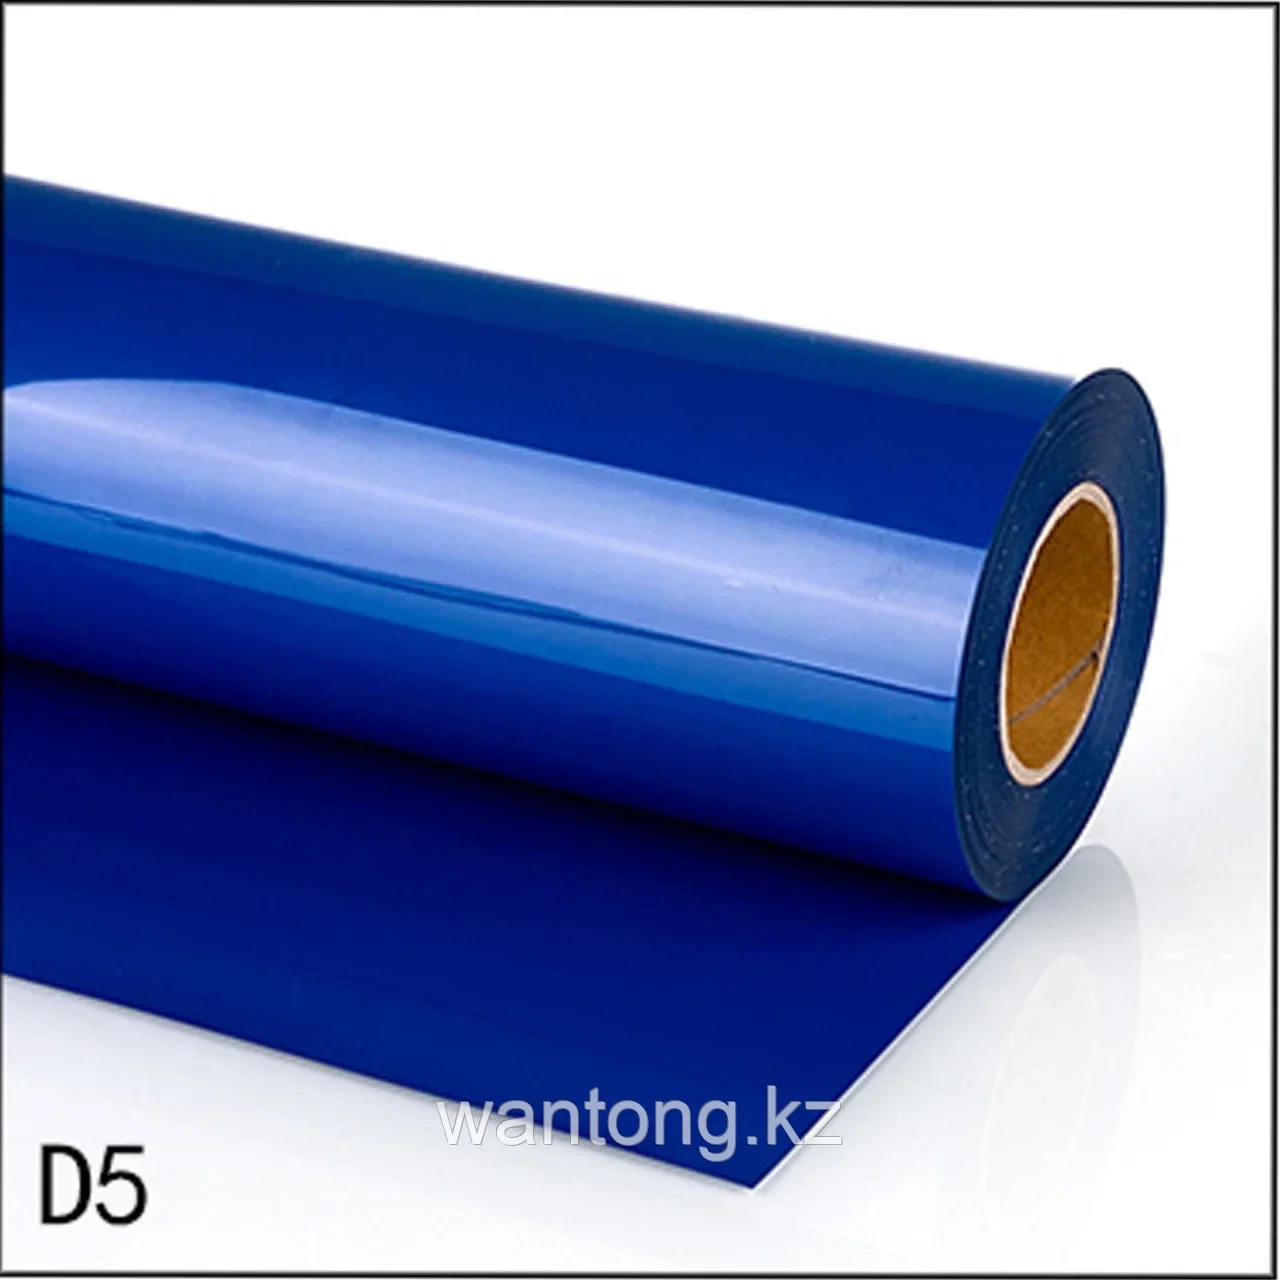 Термо флекс PVC 0.61*25M синий(K5)